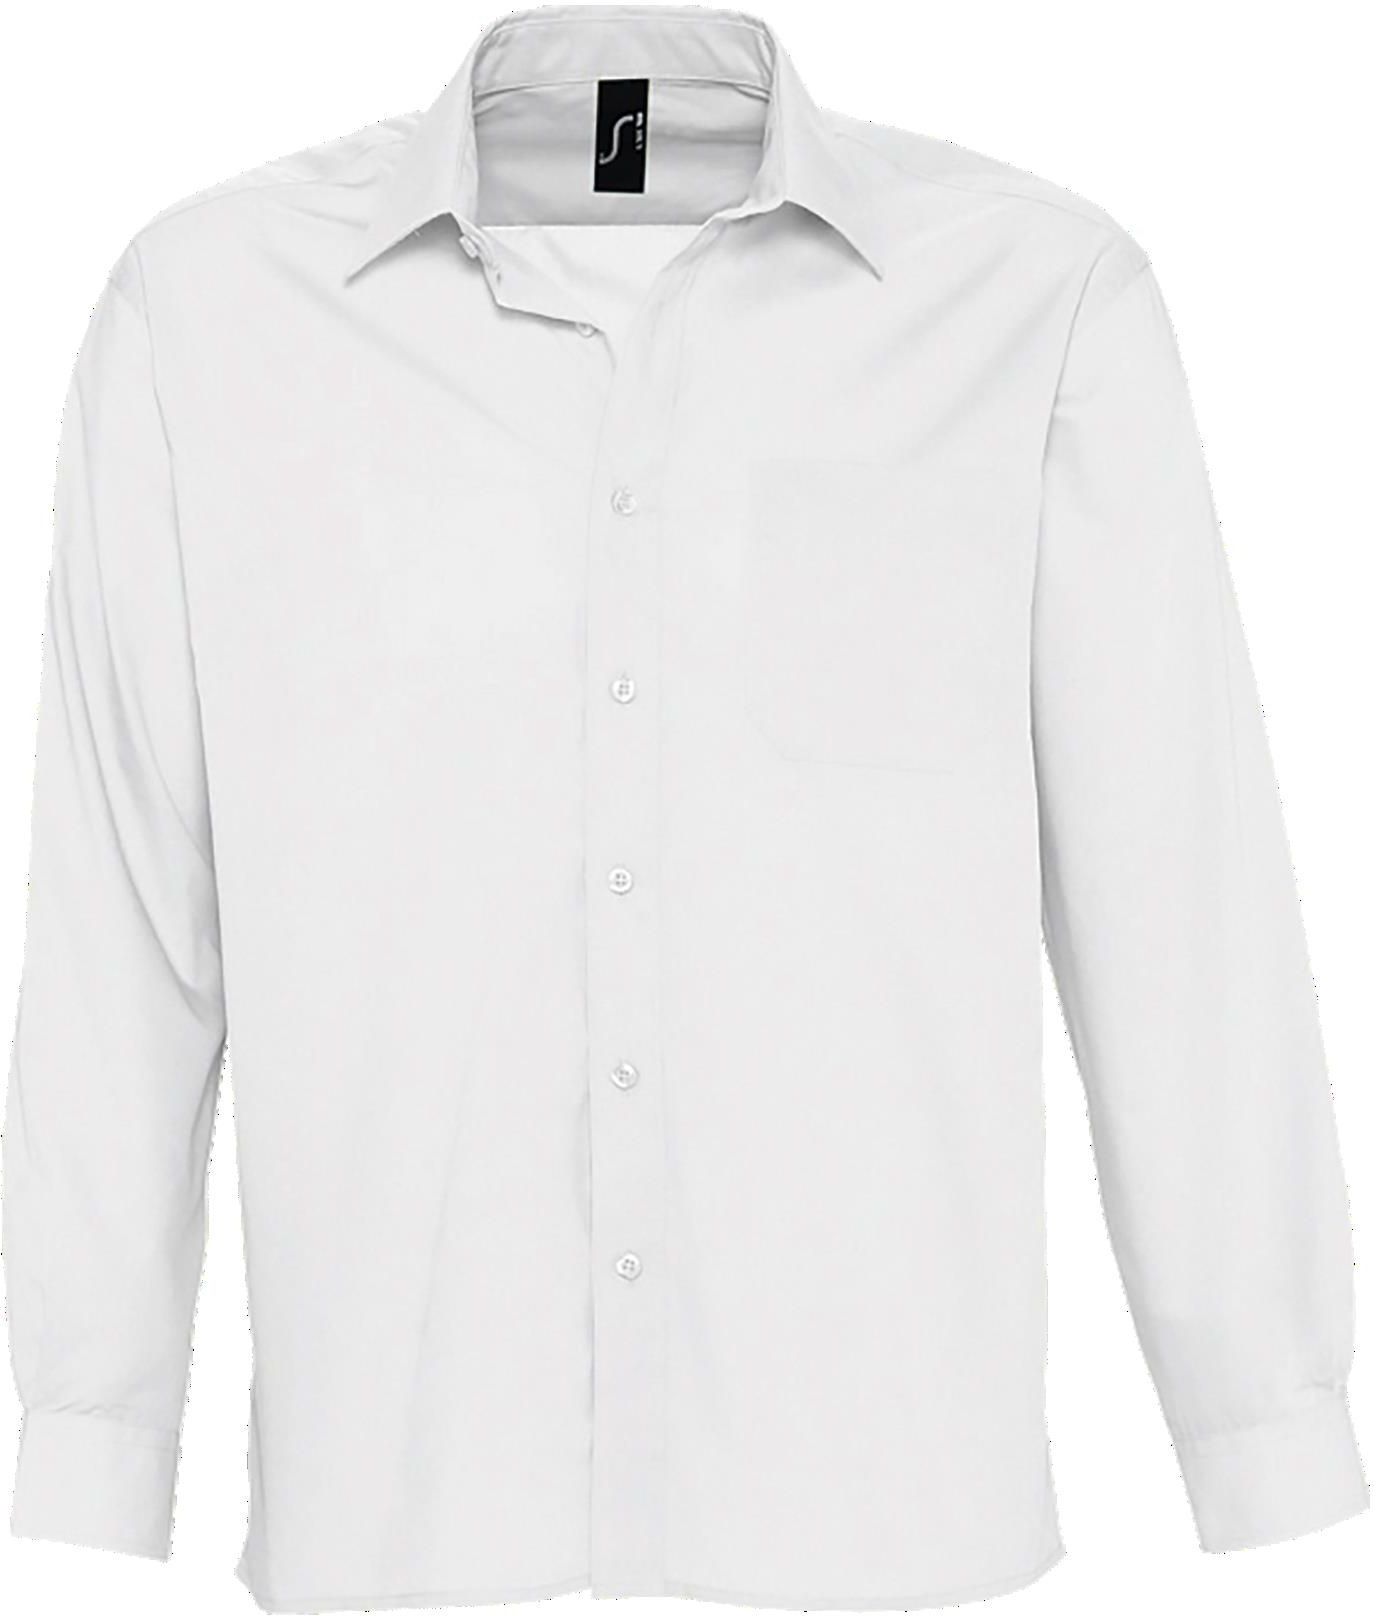 Ανδρικό μακρυμάνικο πουκάμισο από ποπλίνα Baltimore SOLS 16040 White